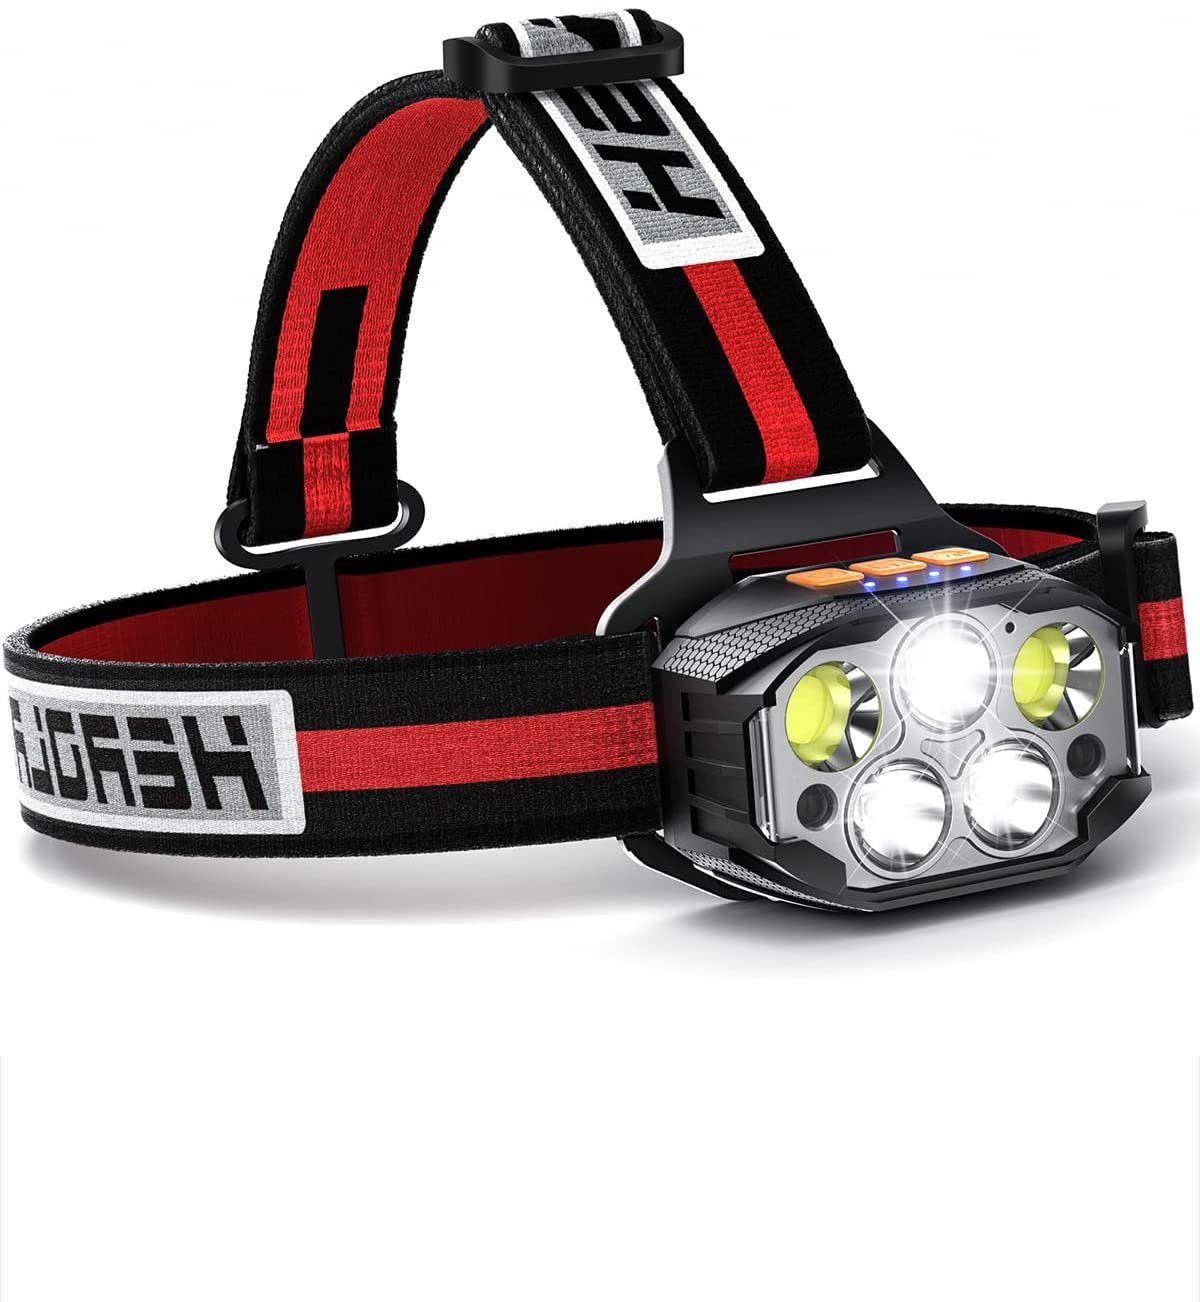 LED Stirnlampe Kopflampe Headlampe Headlight USB Wiederaufladbar Outdoor Campen 